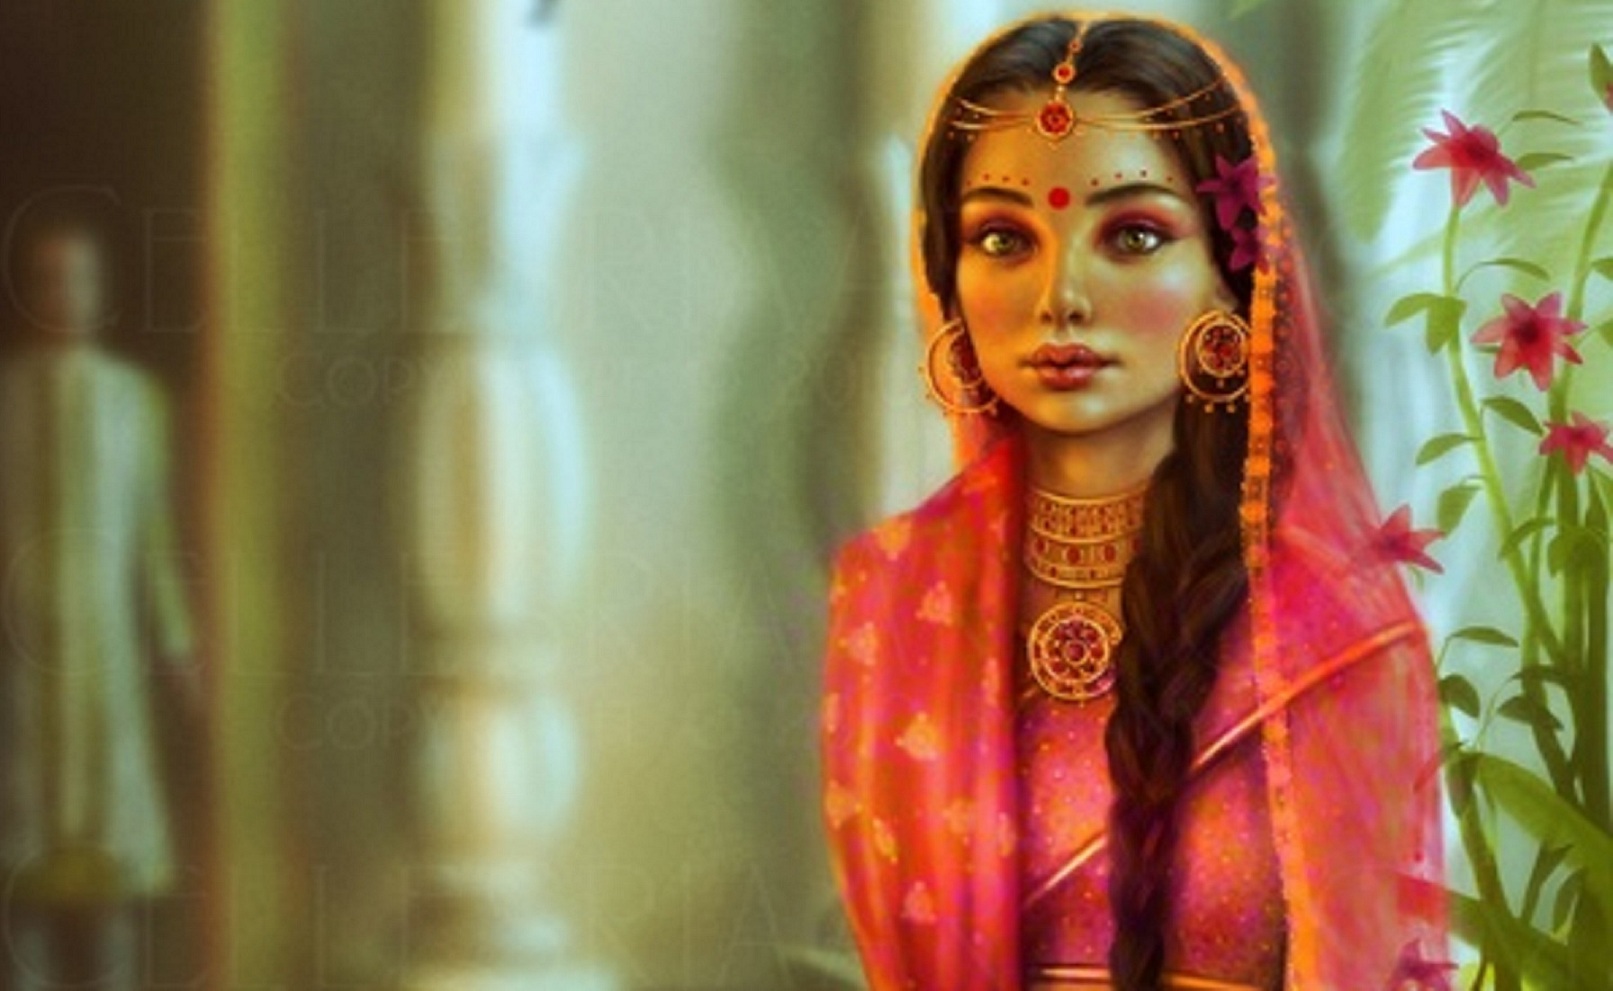 Indian girl saying bade rahe